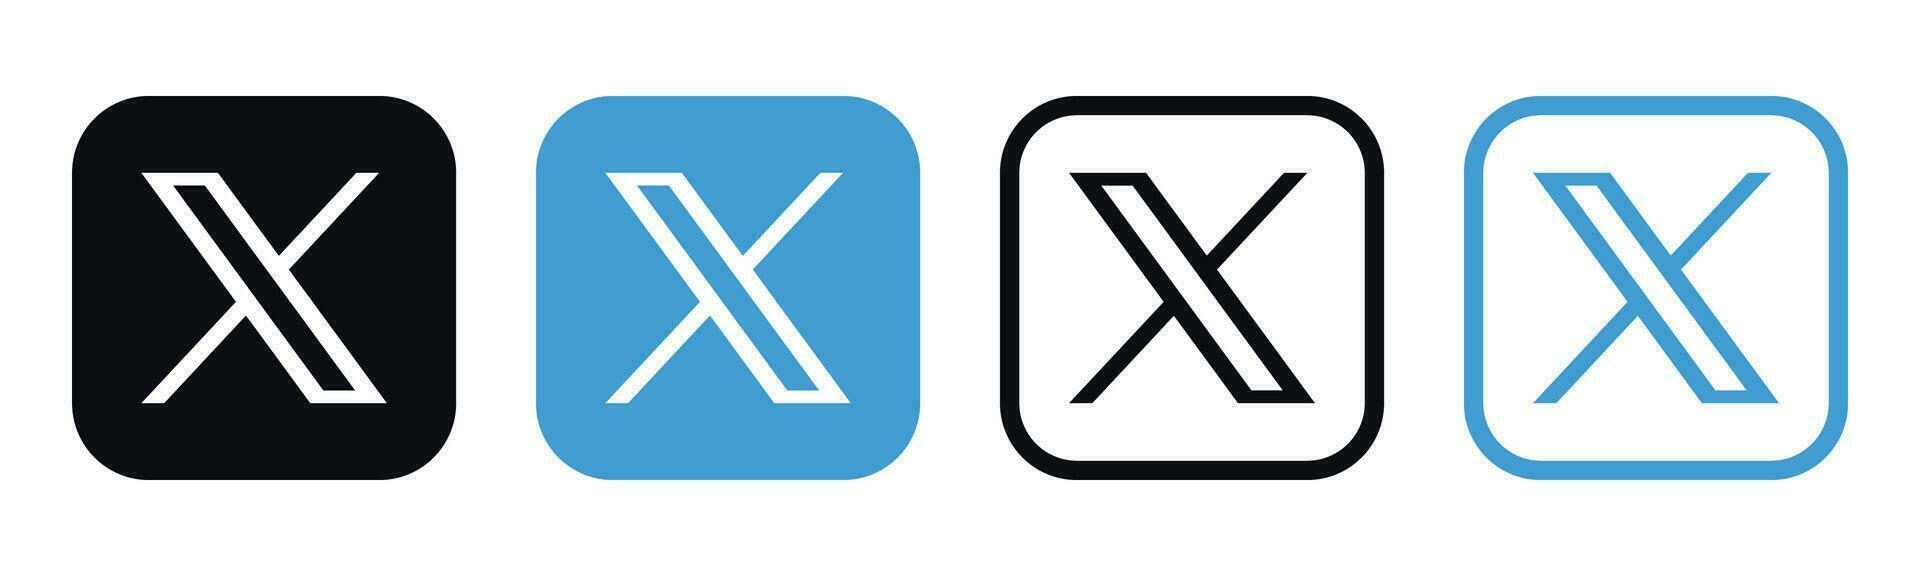 X Nouveau Twitter social médias marque logo vecteur